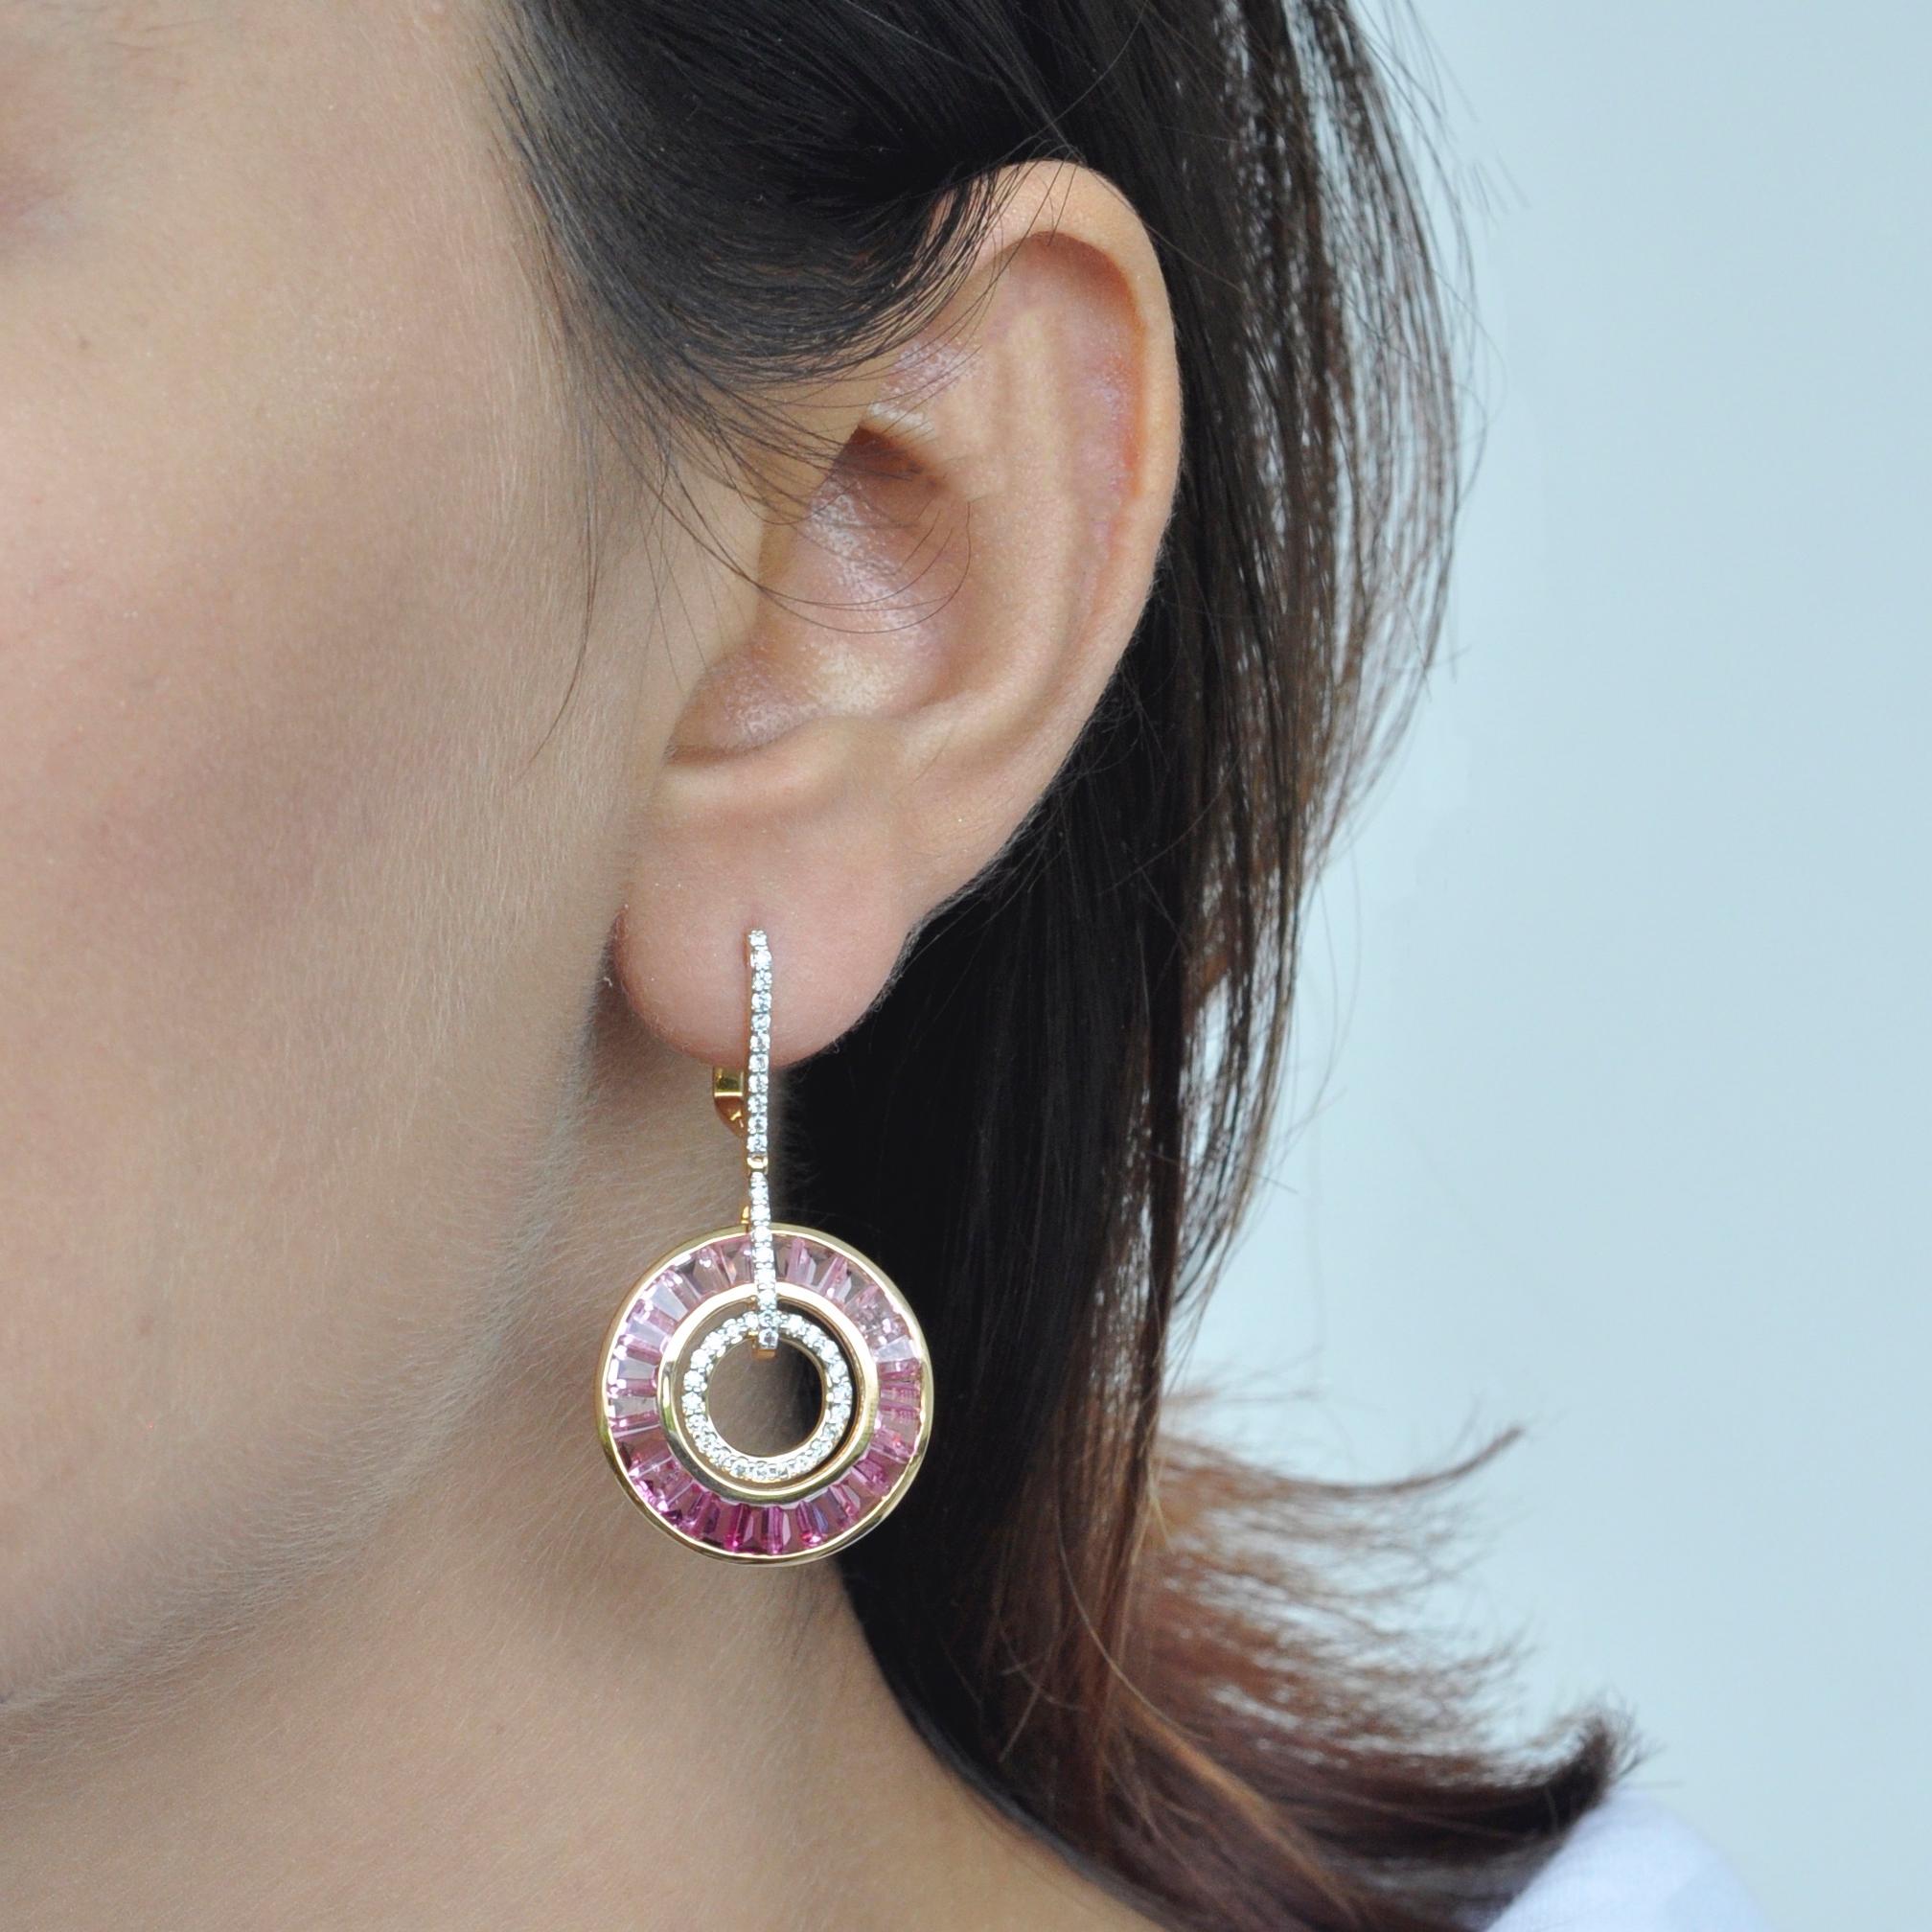 Le style Art déco, la couleur et la culture s'unissent pour inspirer cette délicate paire de boucles d'oreilles art déco en or 18 carats avec tourmaline rose, baguette et diamant, où les nuances dégradées de la tourmaline rose expriment le féminisme